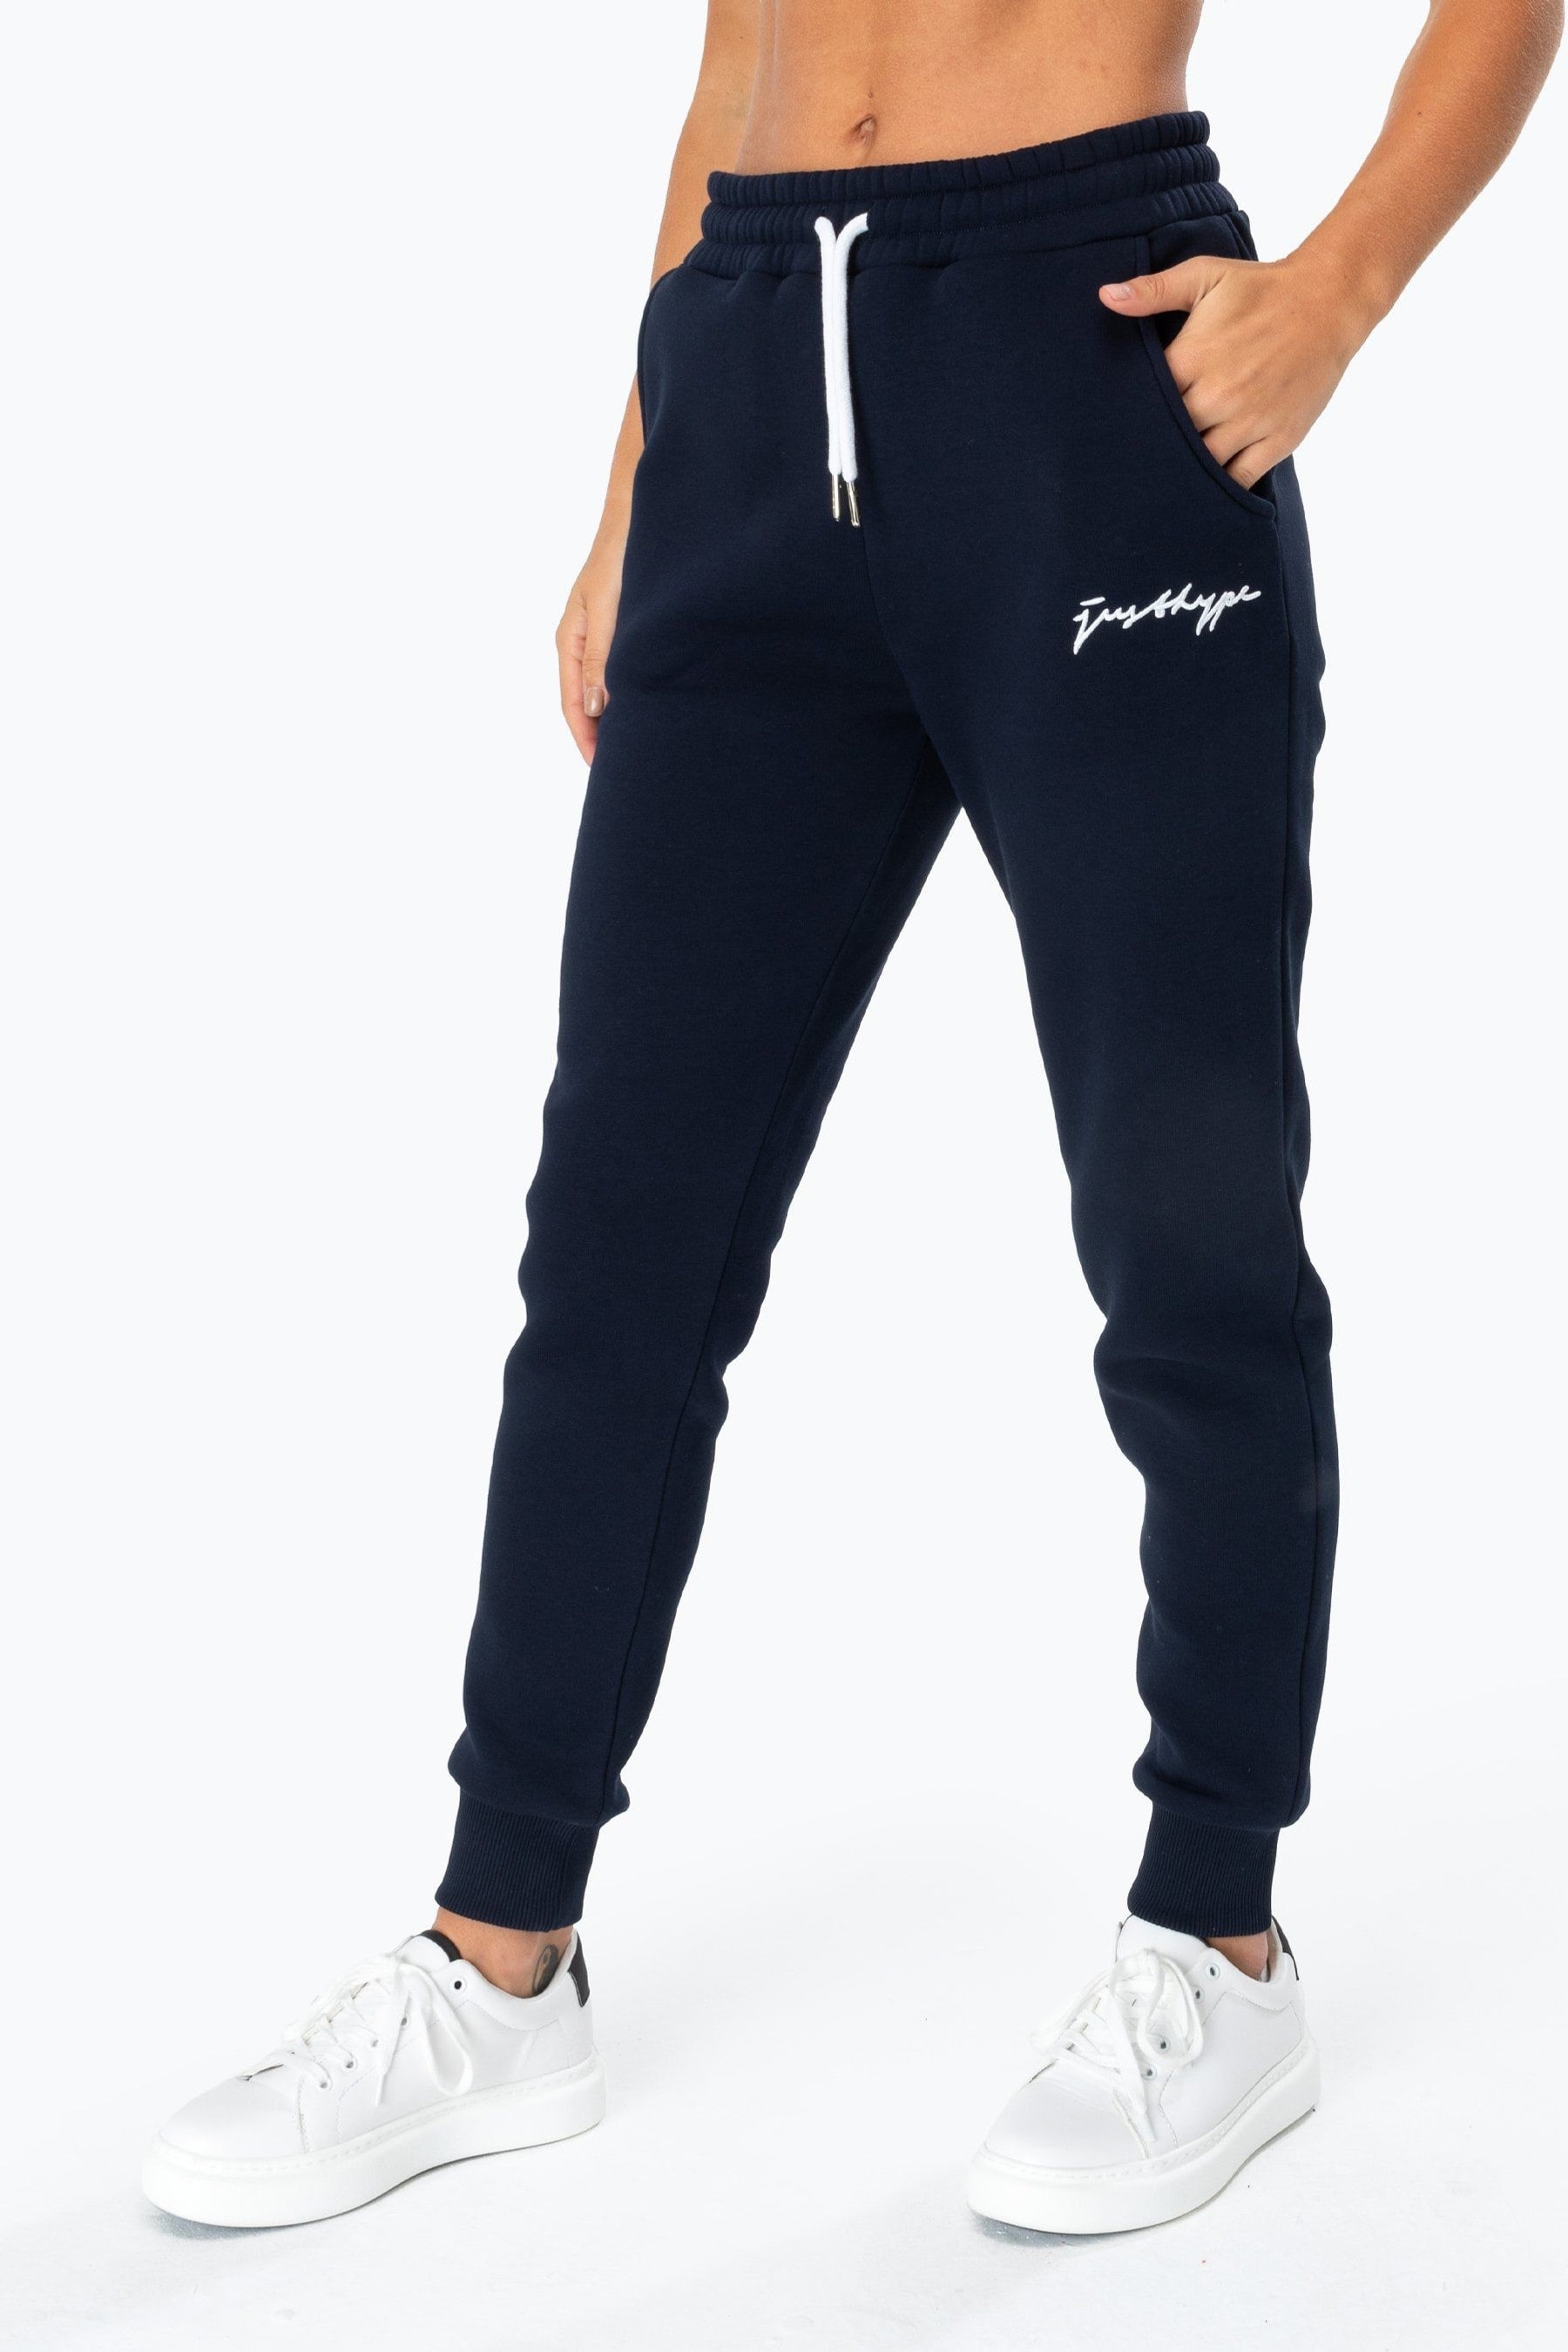 Женские спортивные брюки с логотипом Scribble Hype, синий